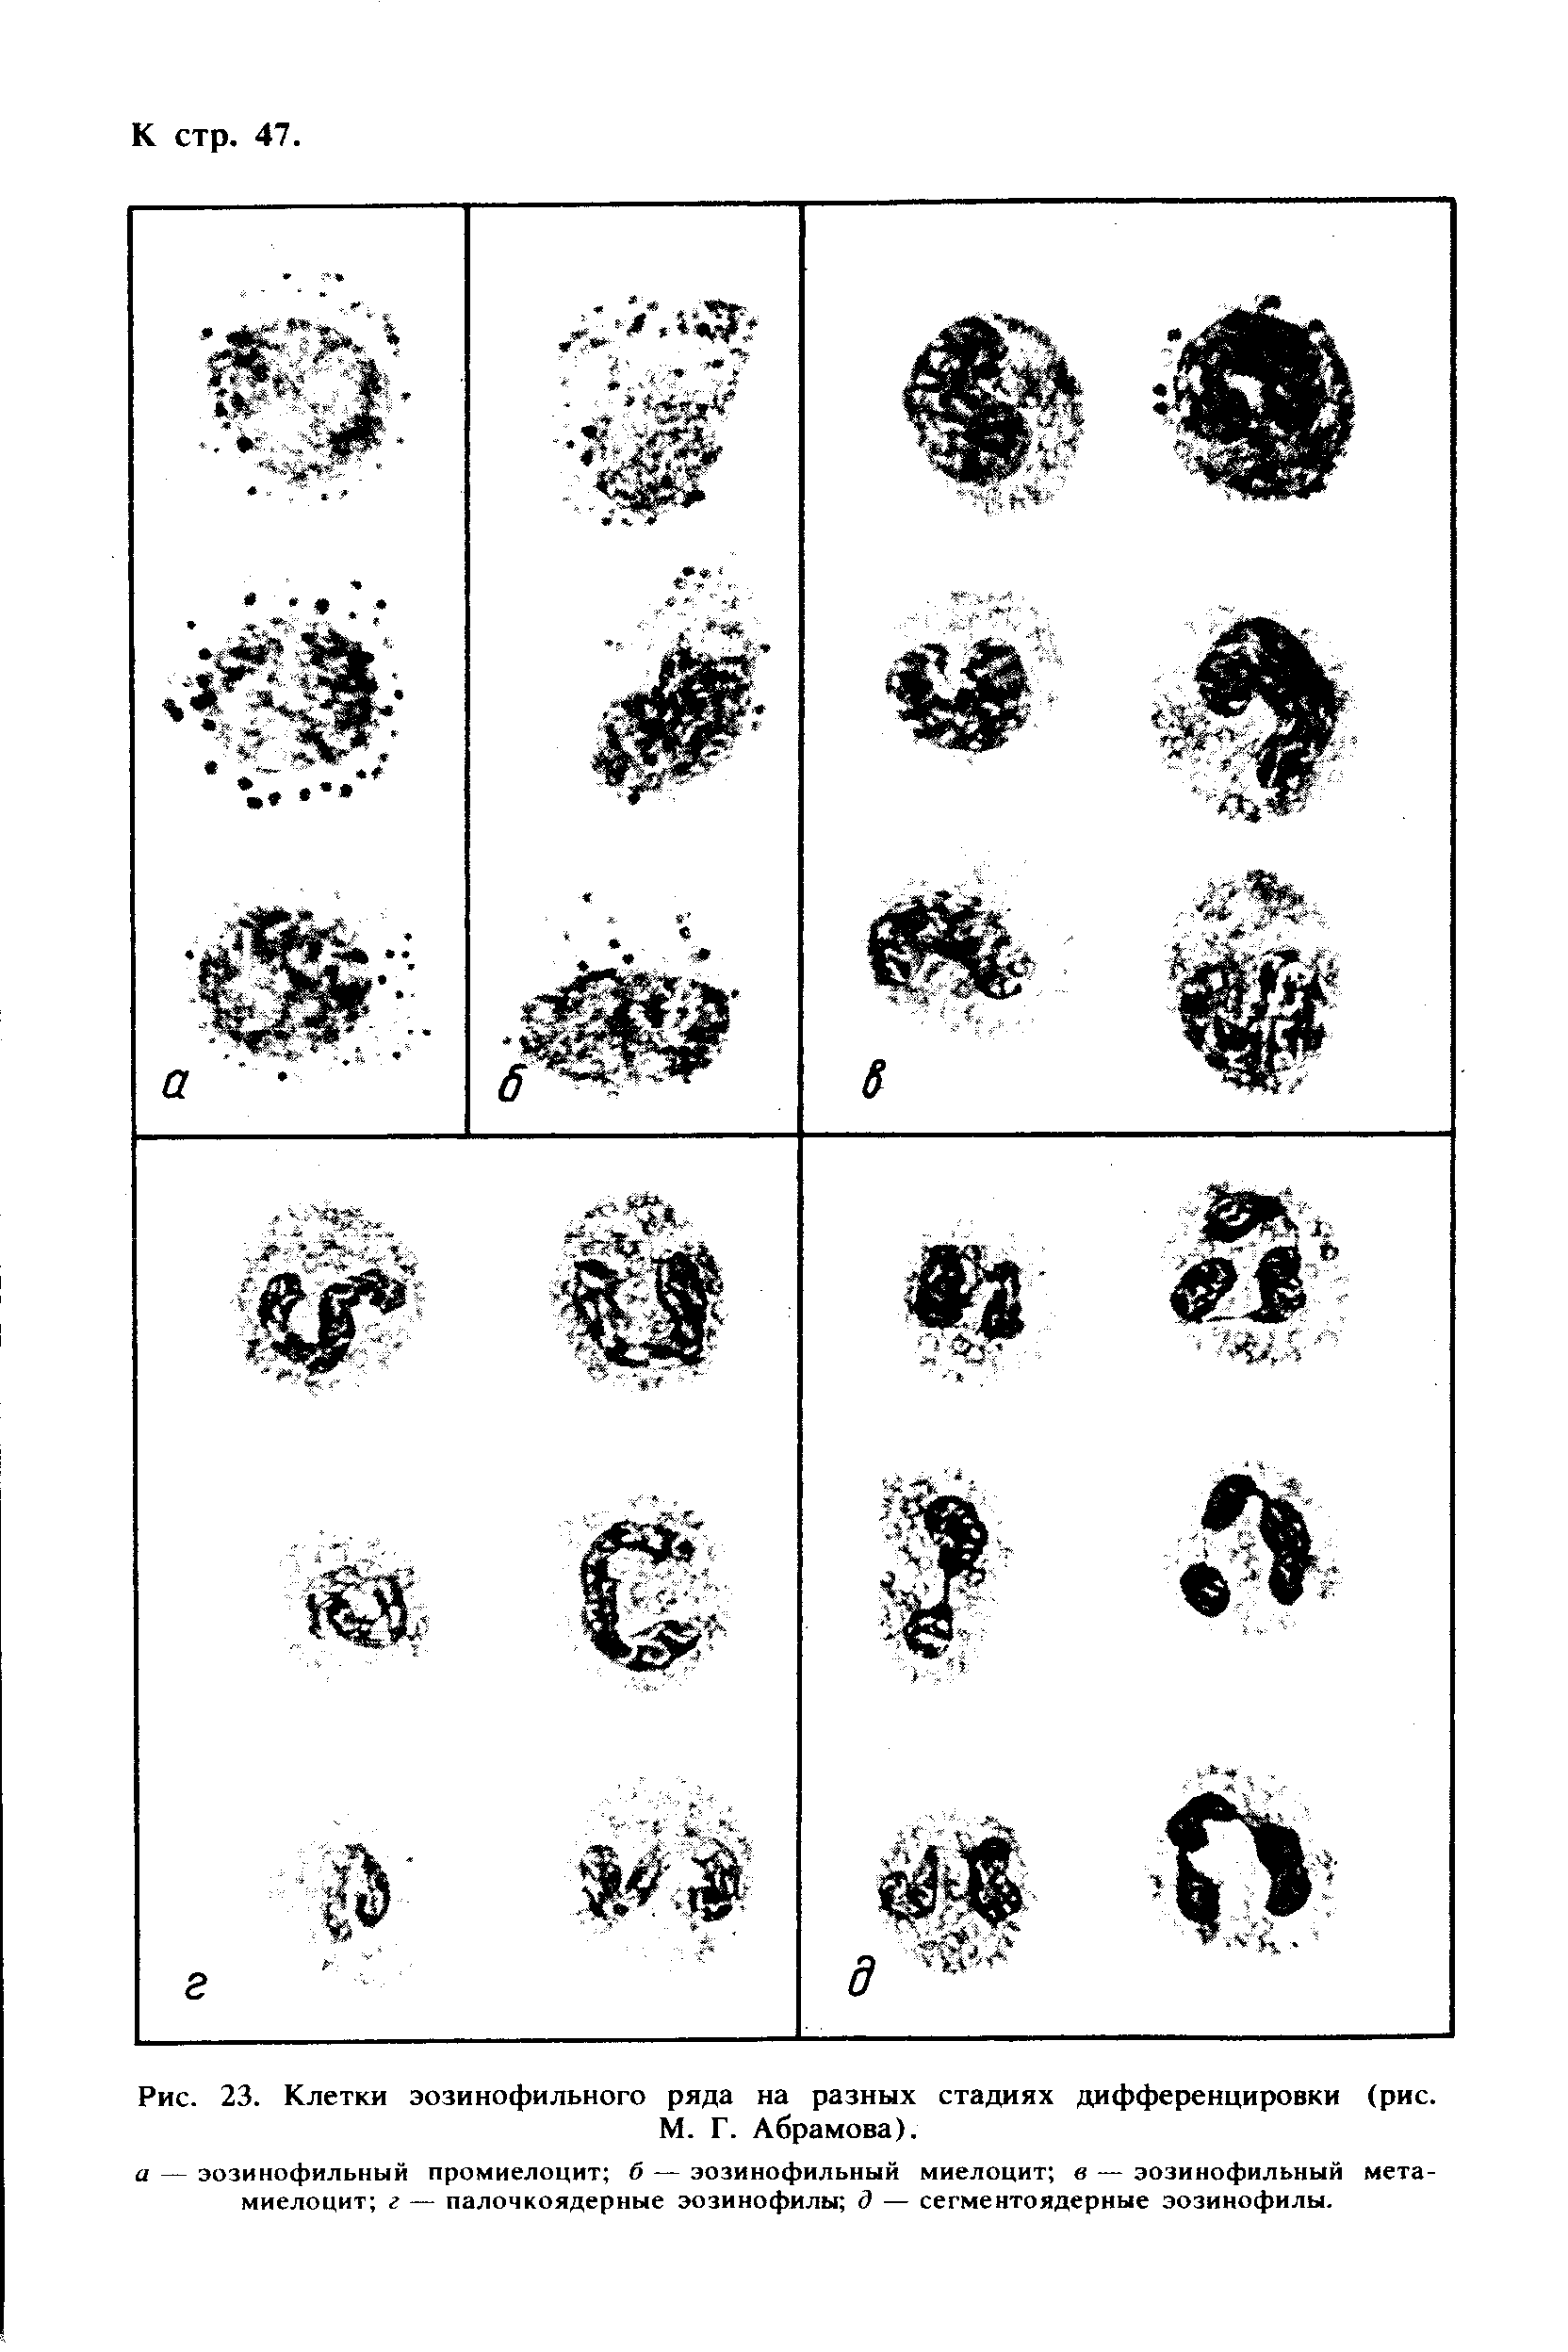 Рис. 23. Клетки эозинофильного ряда на разных стадиях дифференцировки (рис. М. Г. Абрамова).